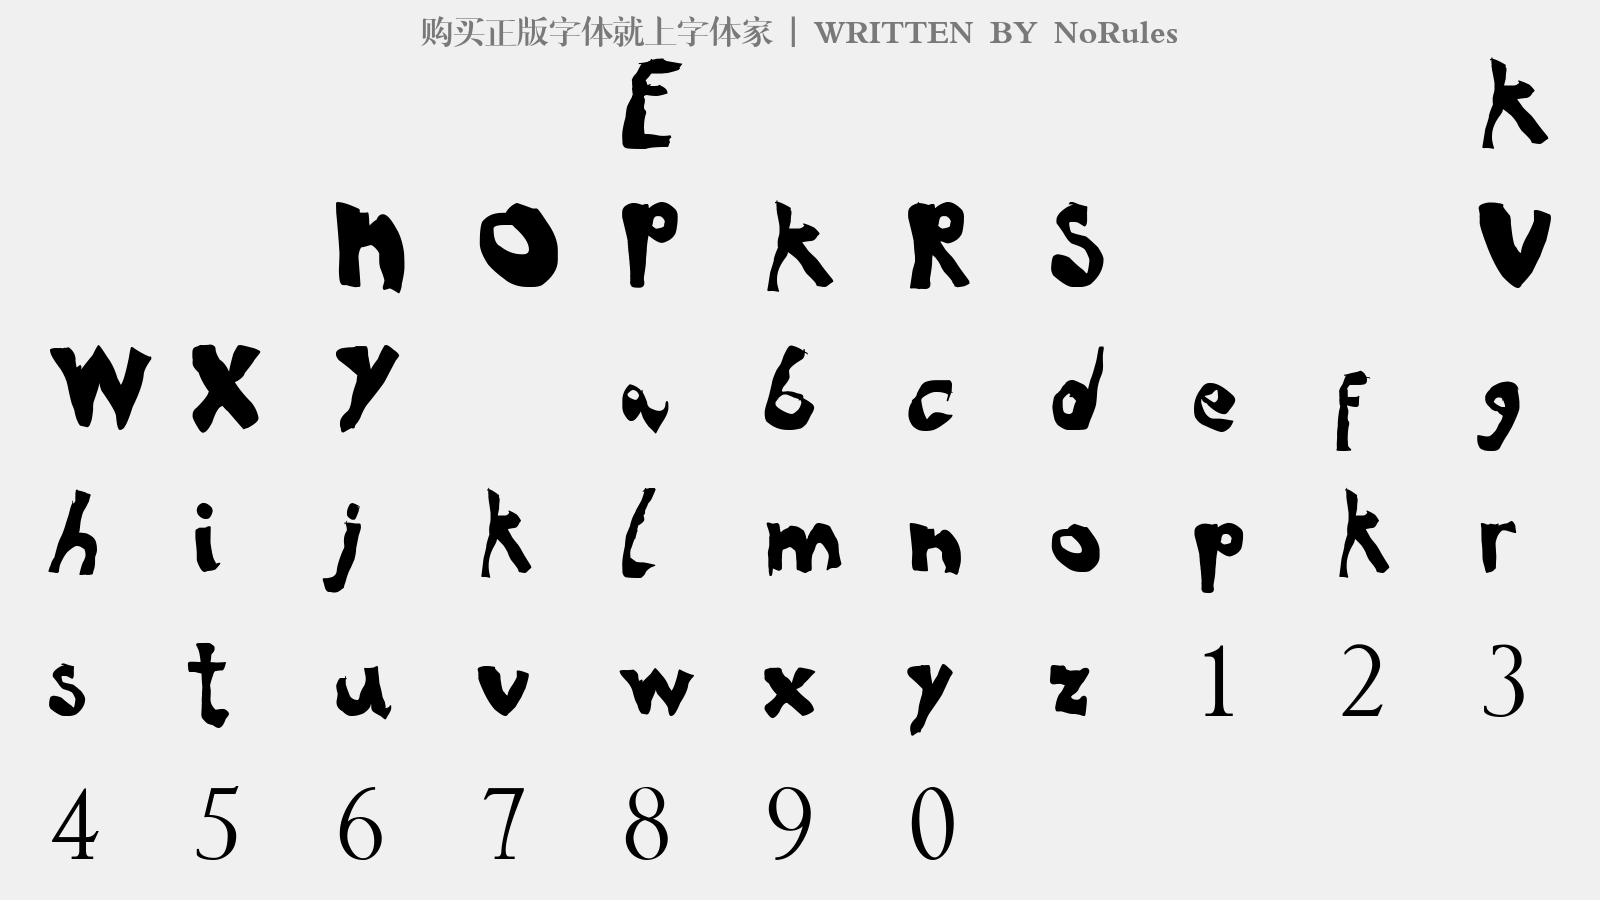 NoRules - 大写字母/小写字母/数字